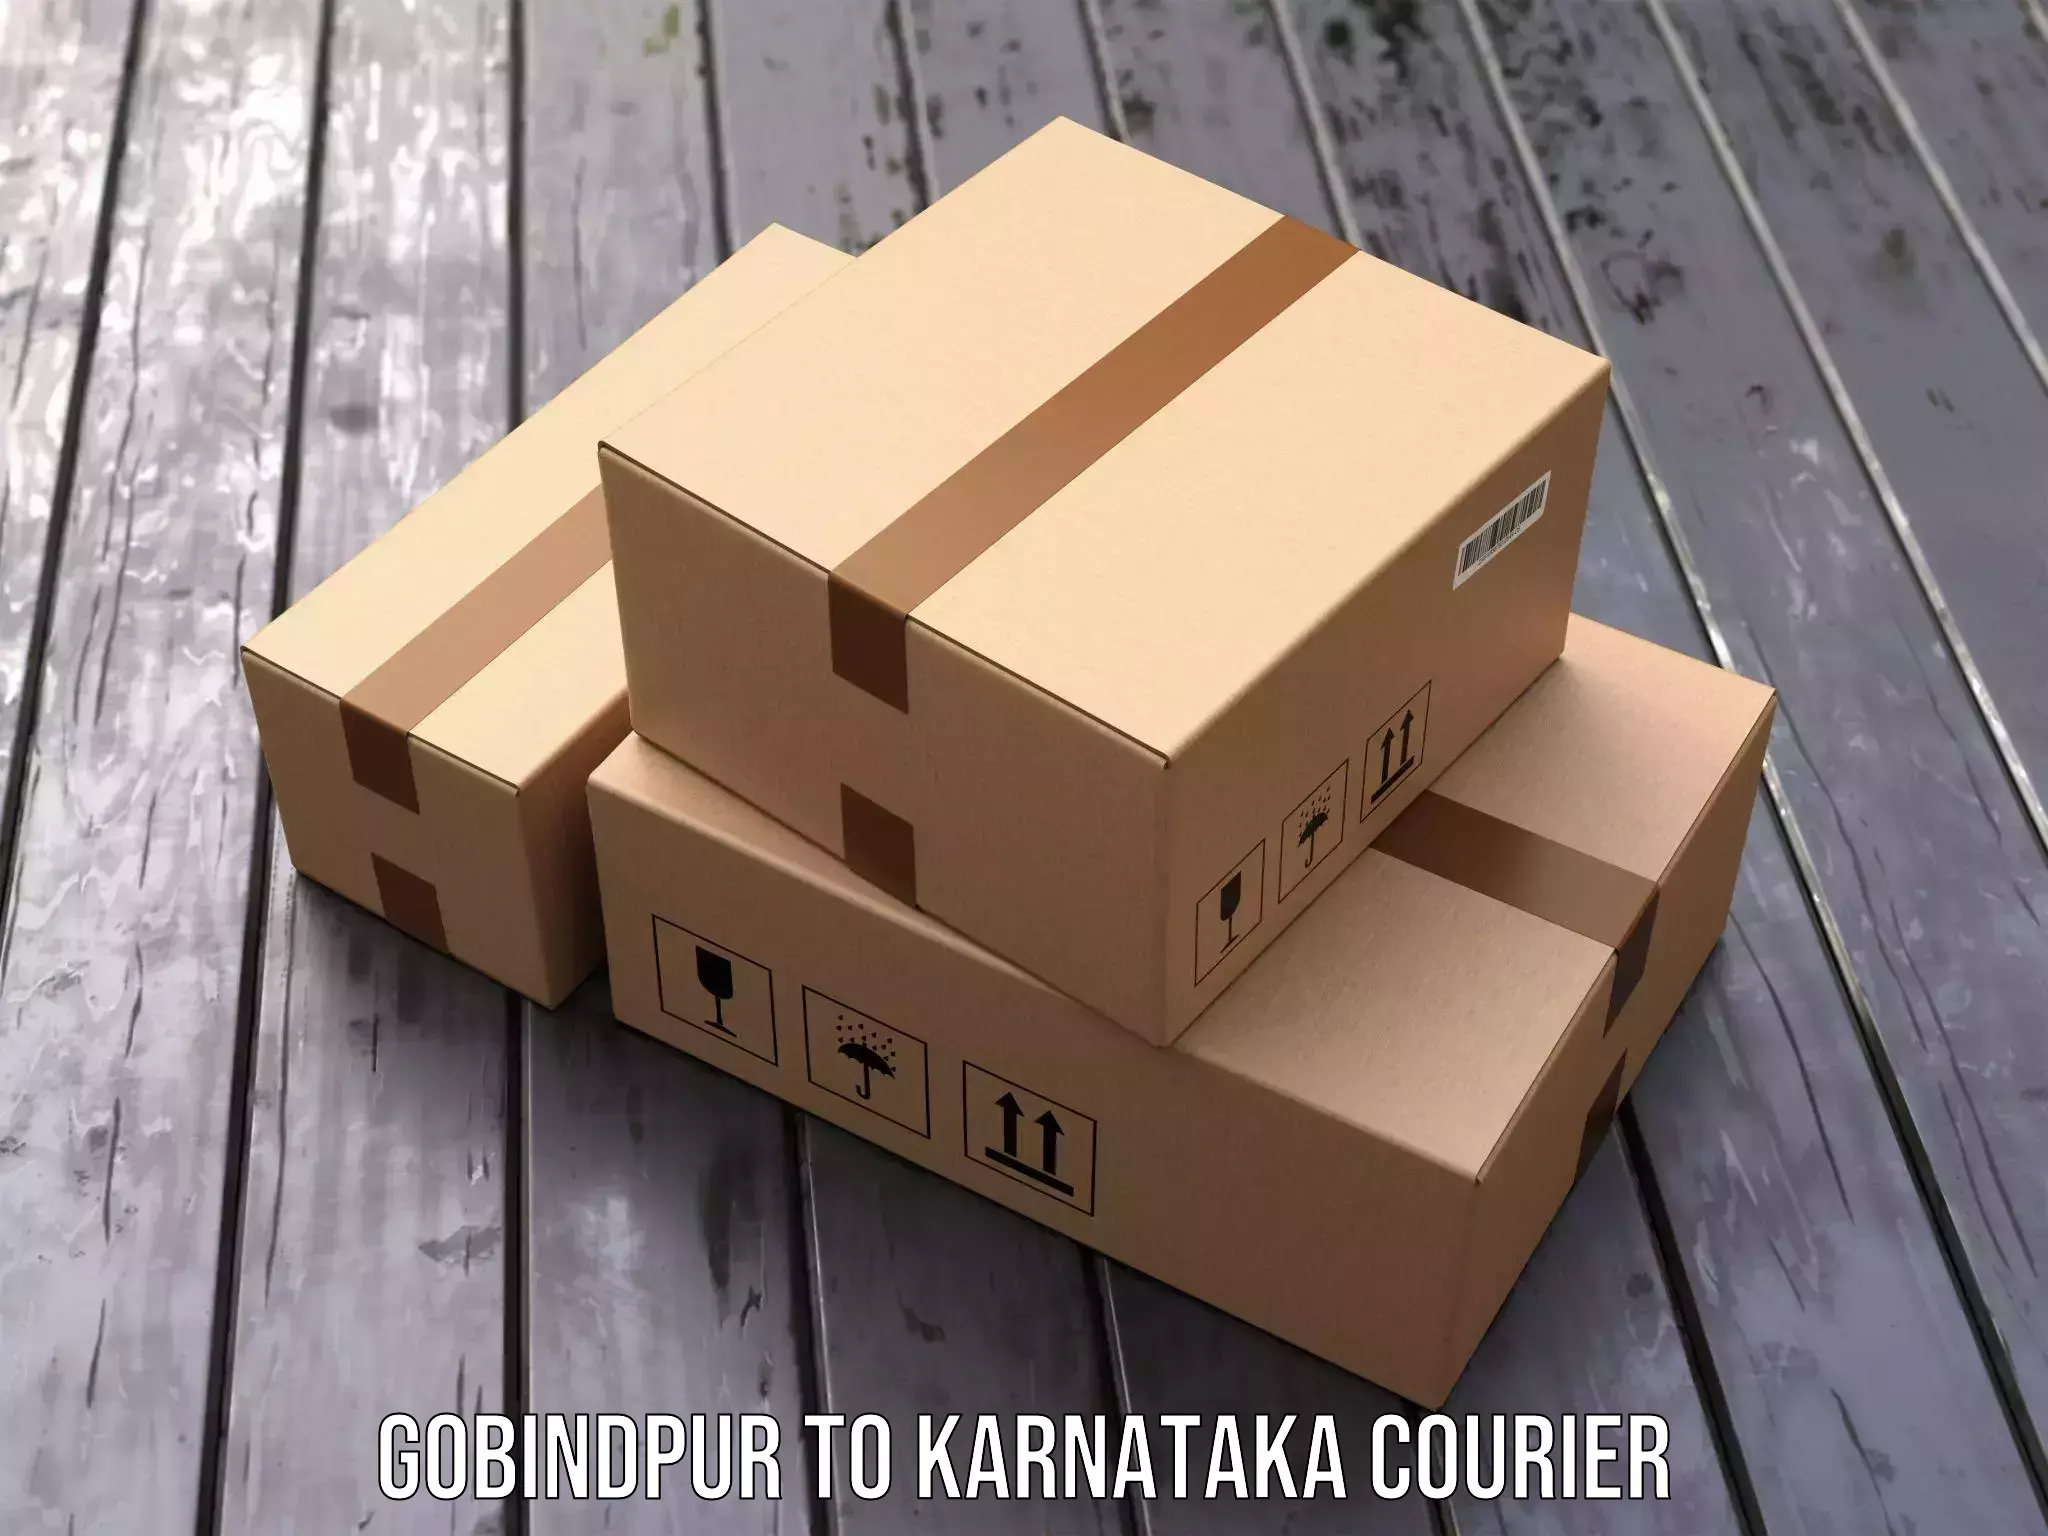 International shipping Gobindpur to Kanjarakatte